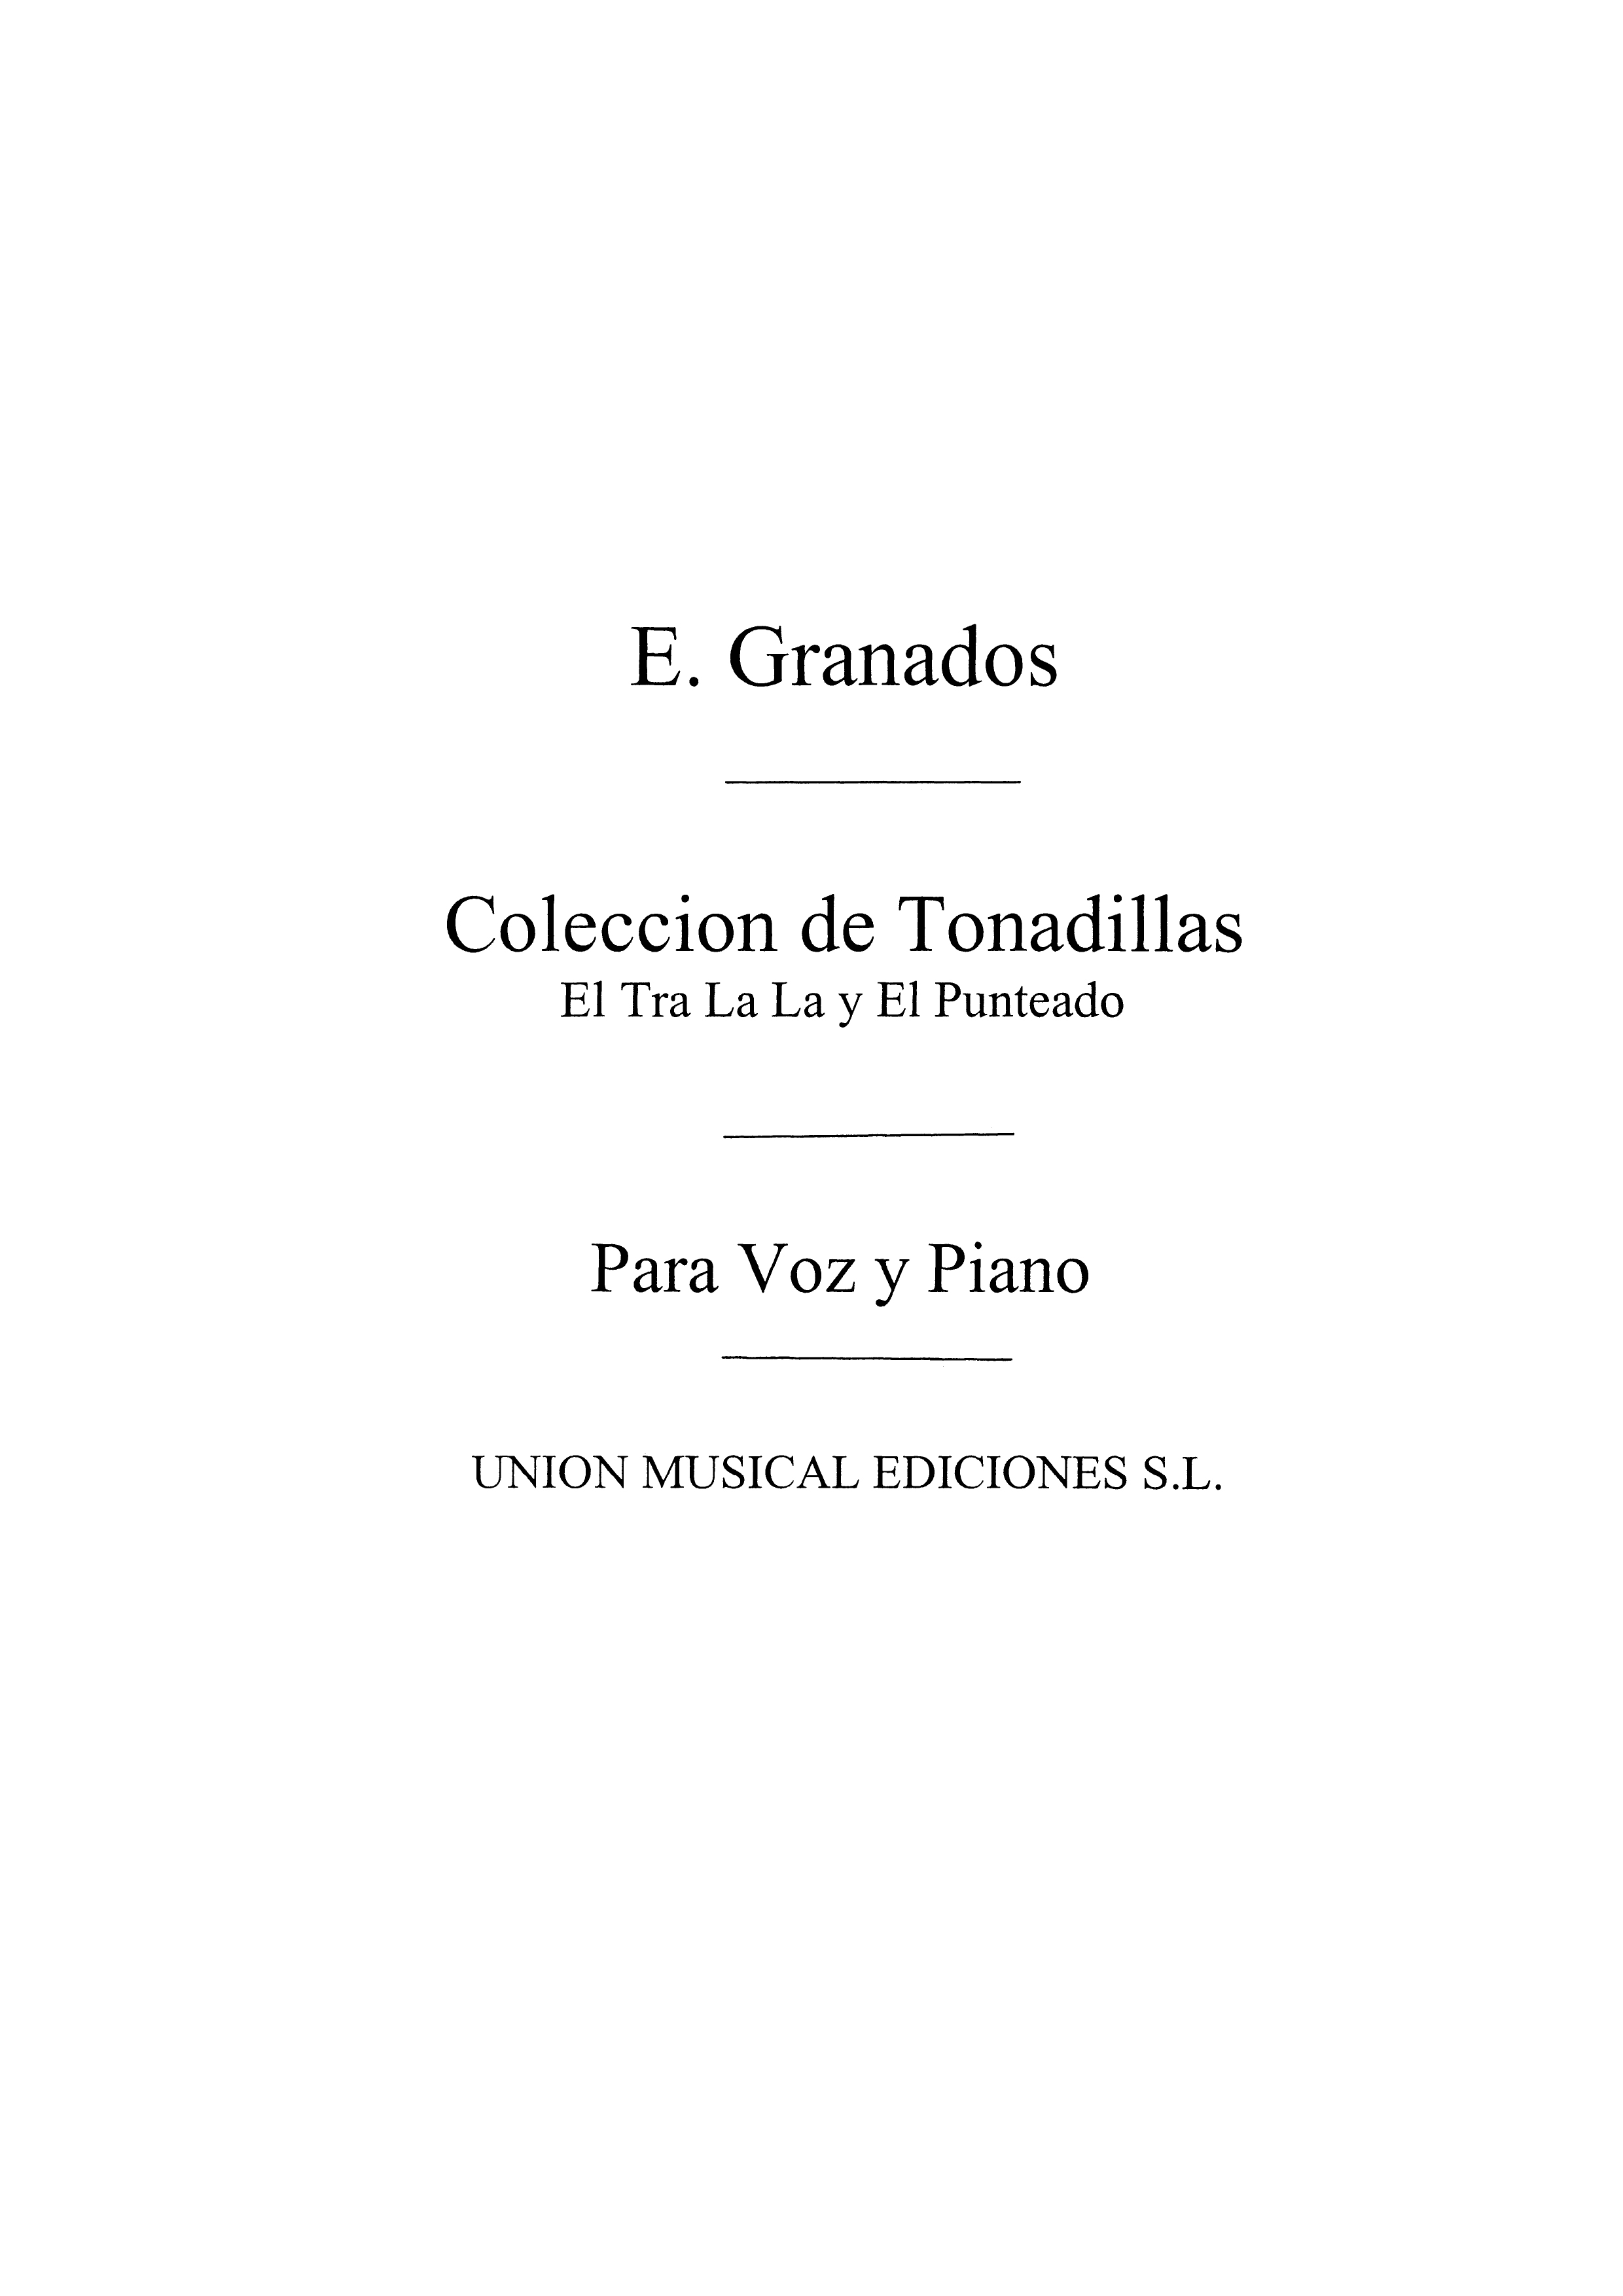 Granados: El Tra-la-la Y El Punteado Clccn De Tndlls for Voice and Piano